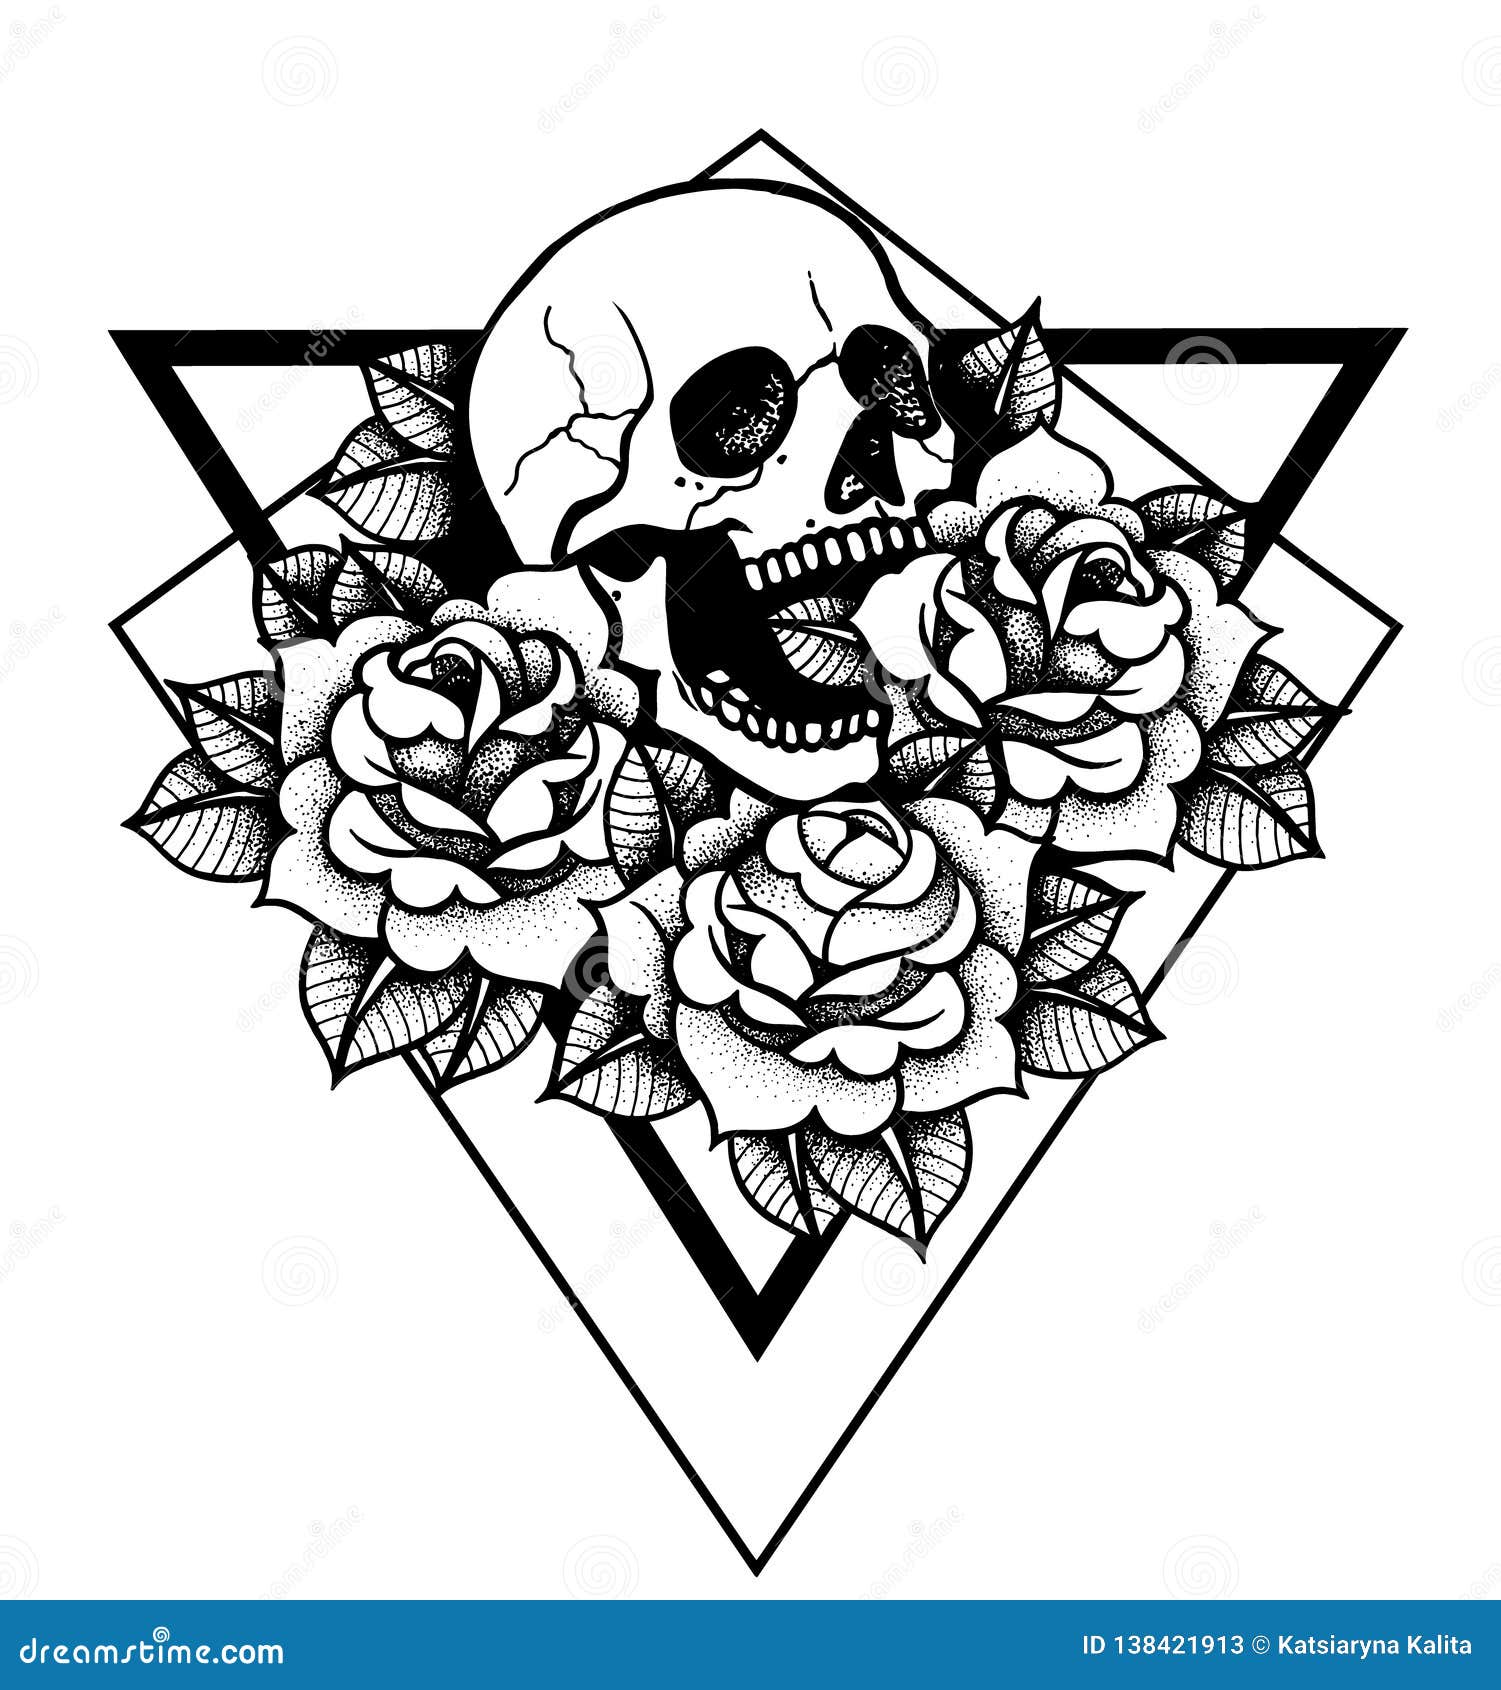 Skull and roses tattoo  Skullspirationcom  skull designs tattoos